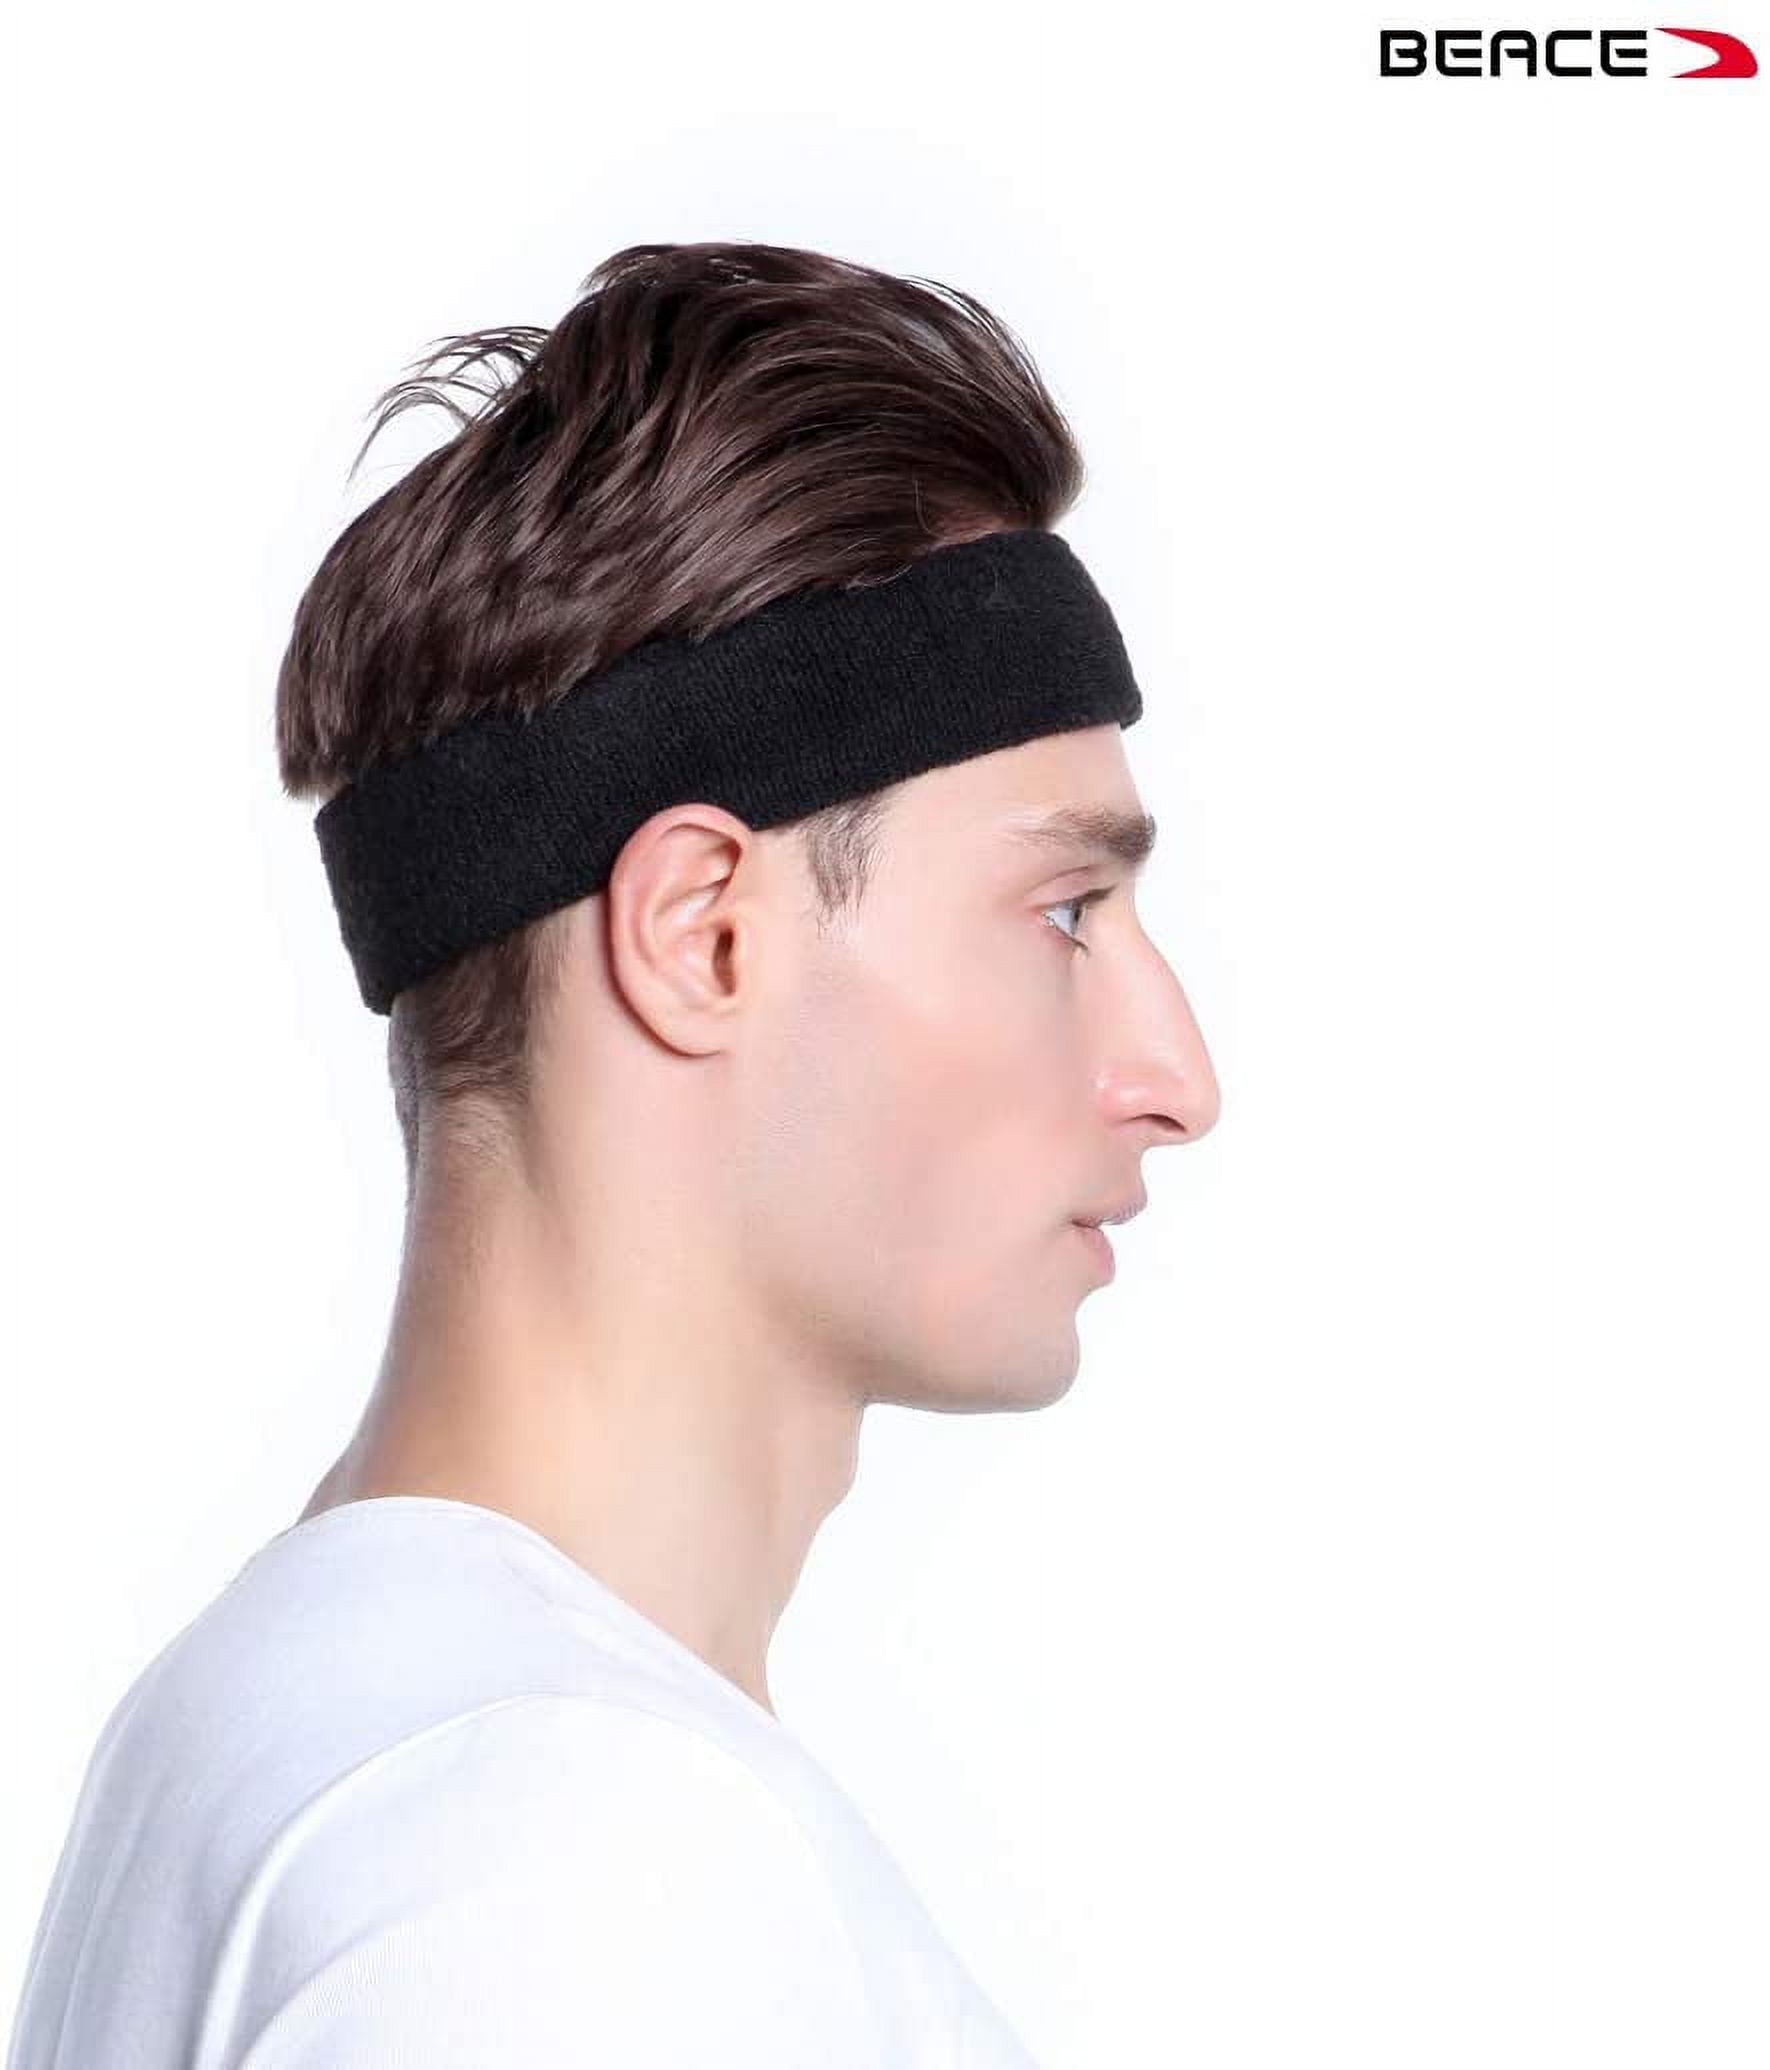 QPIXVB Workout Headbands,Sports & Outdoors Headbands Wristband,Gym Accessories,Moisture Wicking Hairband,Sweatbands